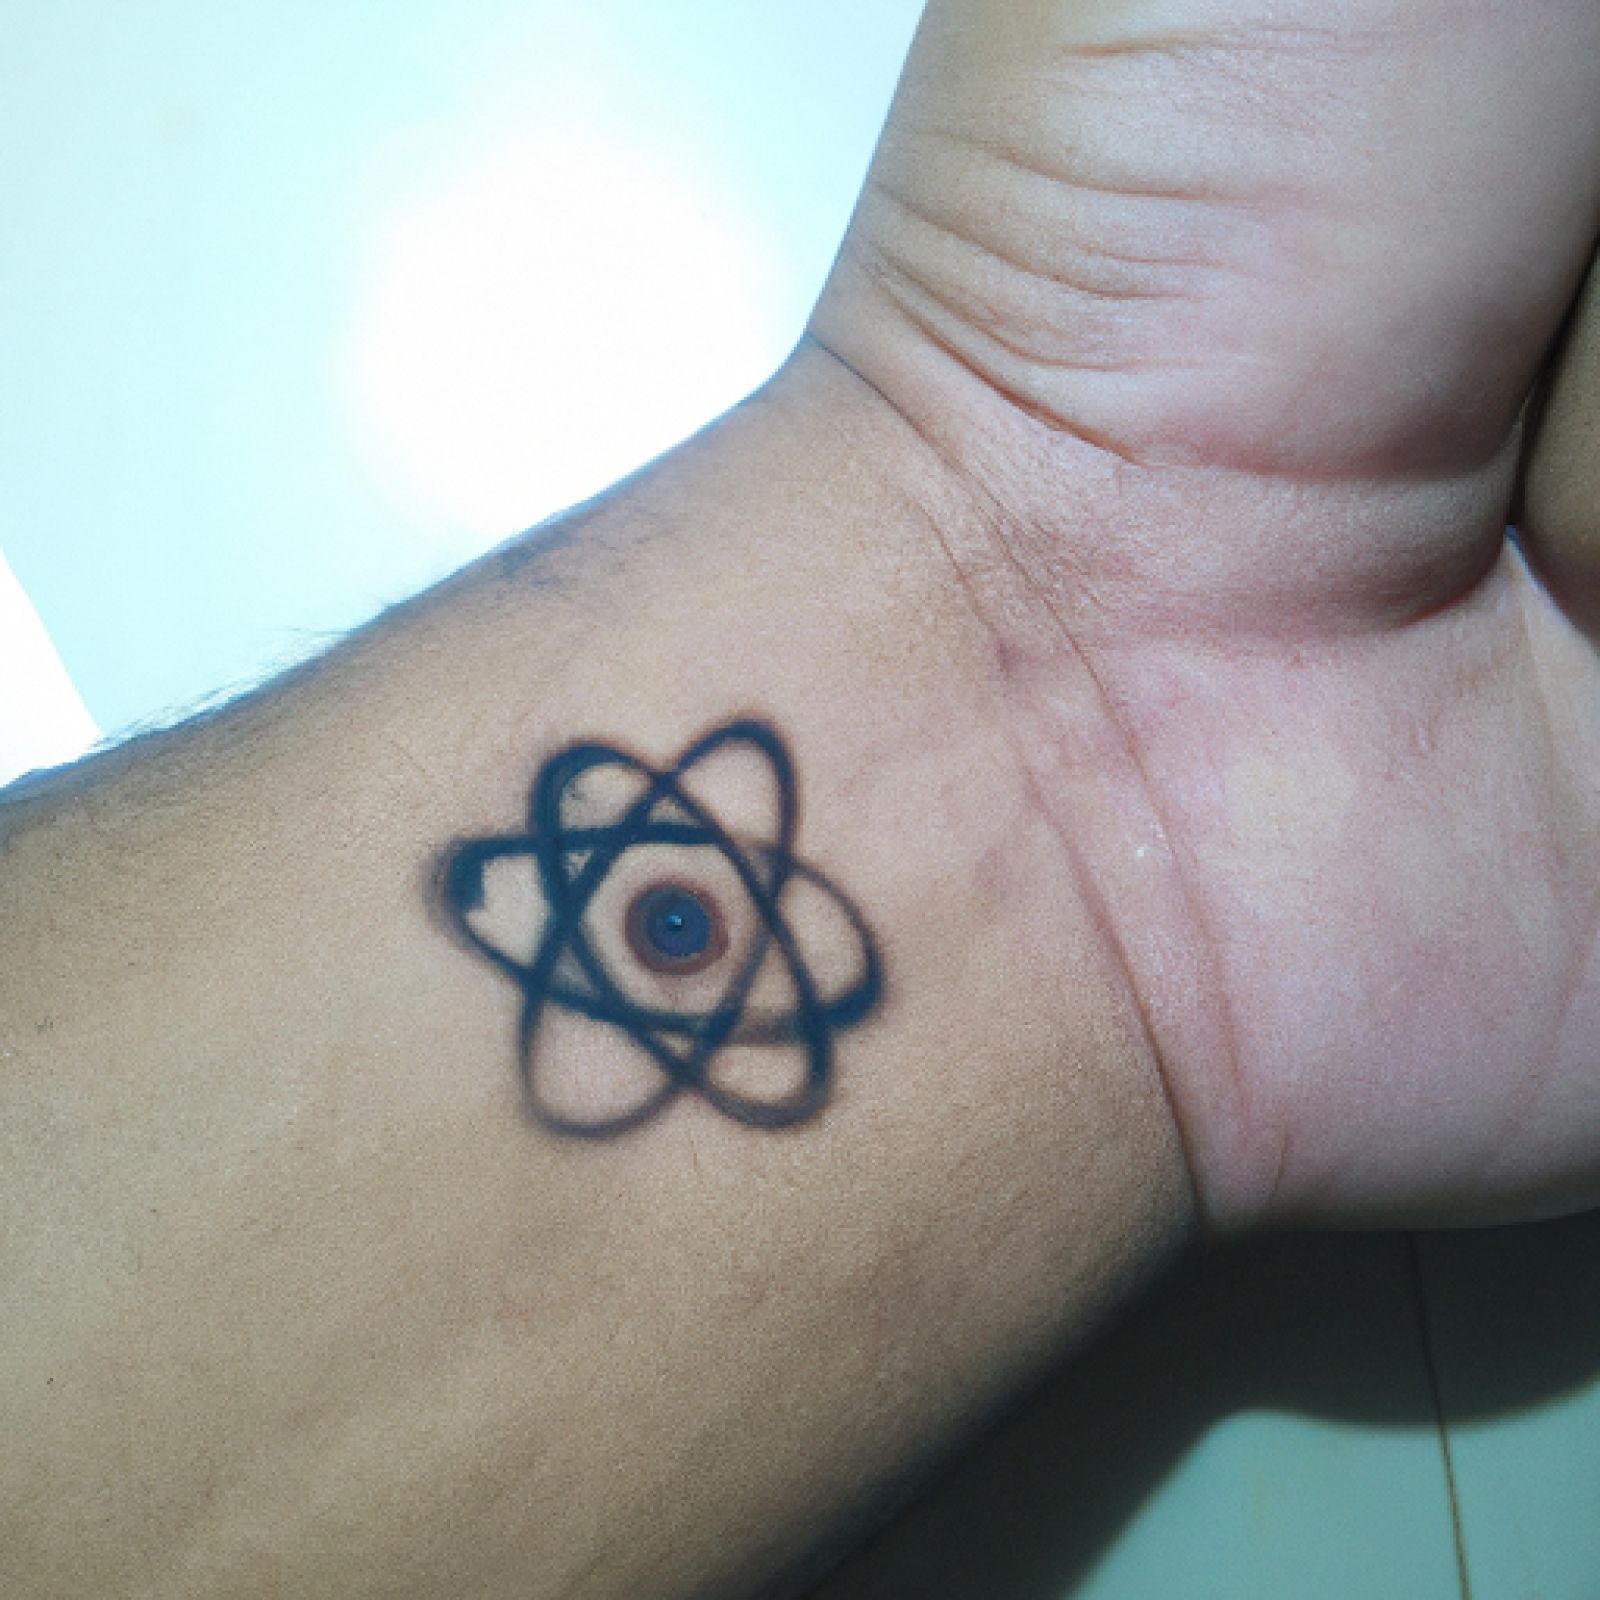 Atom tattoo on hand for men